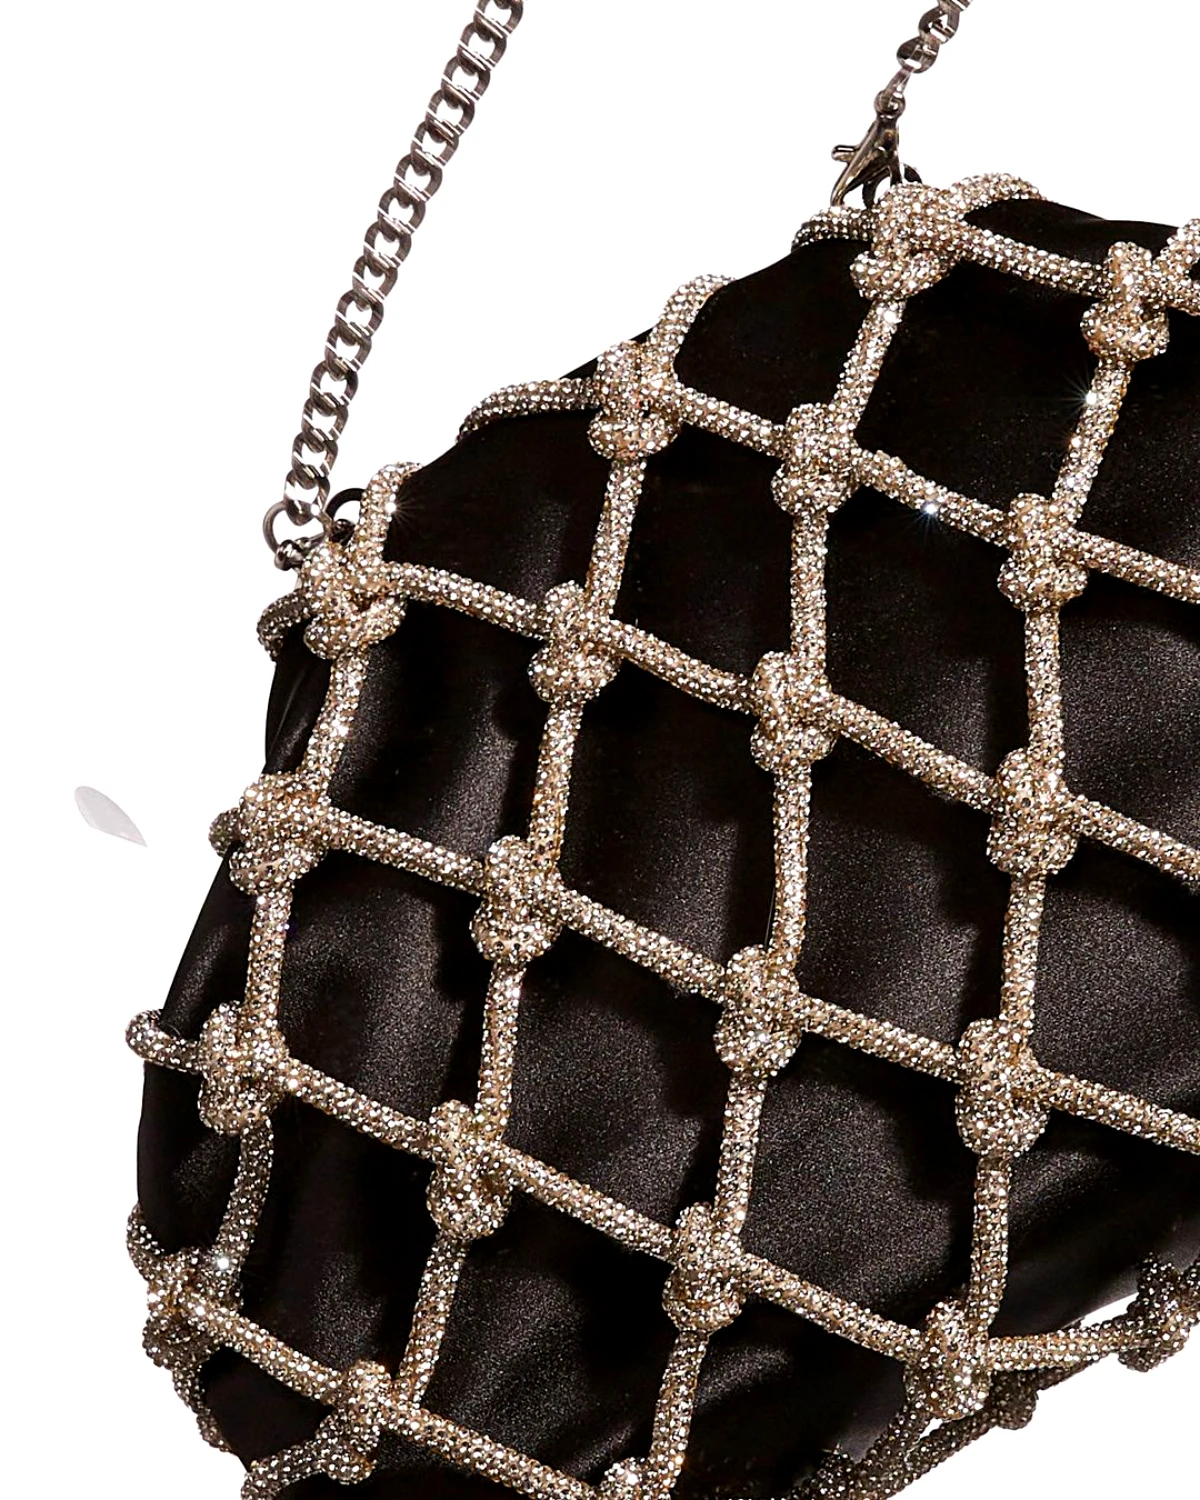 sac a main noir avec des elements metaliques